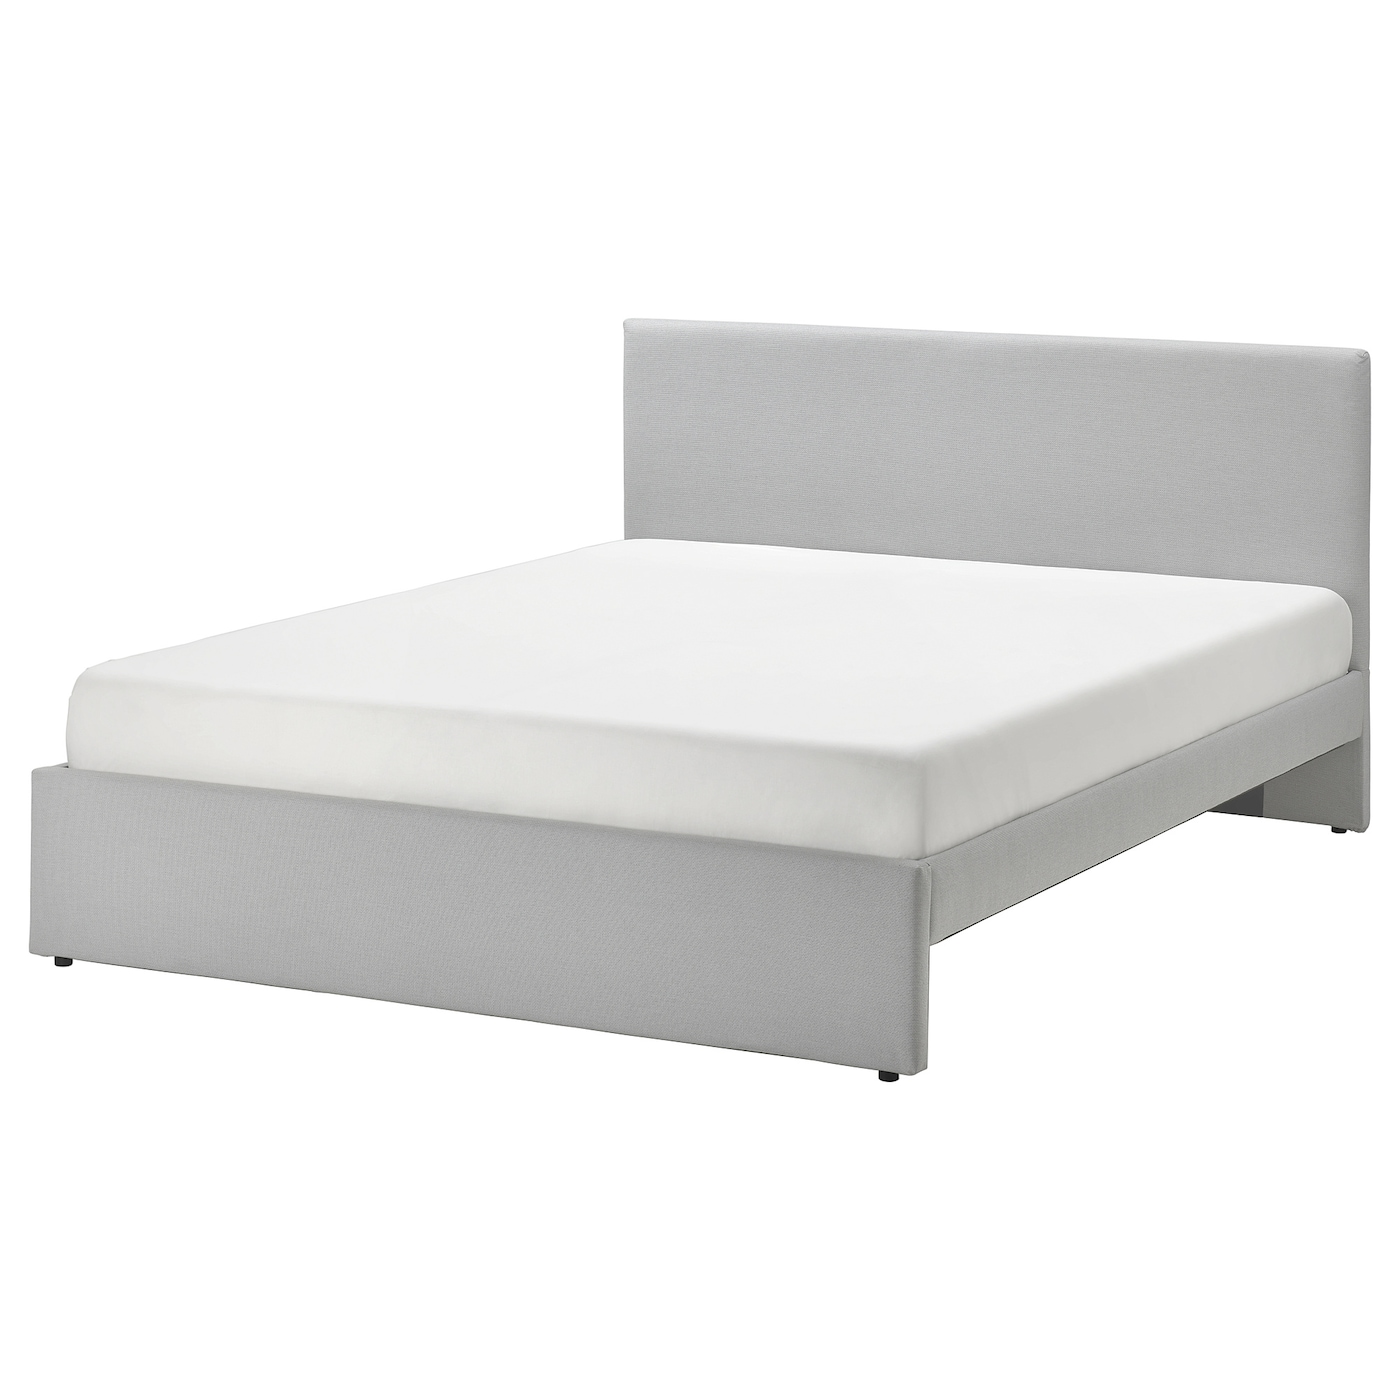 Двуспальная кровать - IKEA GLADSTAD, 200х160 см, светло-серый, ГЛАДСТАД ИКЕА